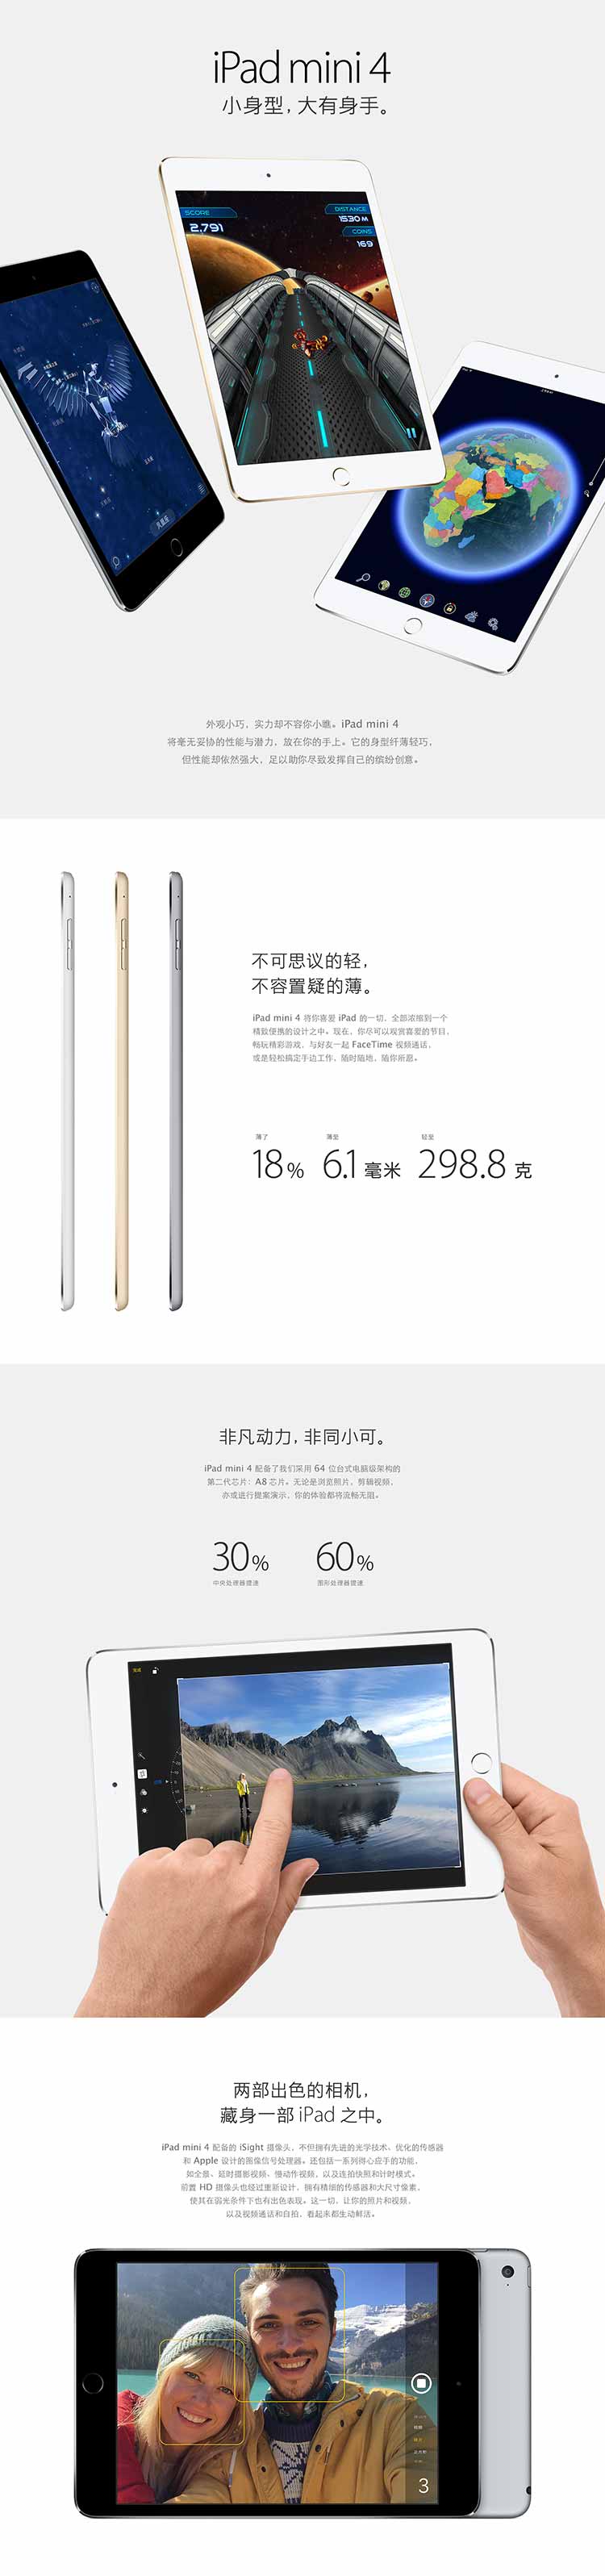 iPad Mini4【价格，怎么样，电信版，合约机】- 中国电信手机频道